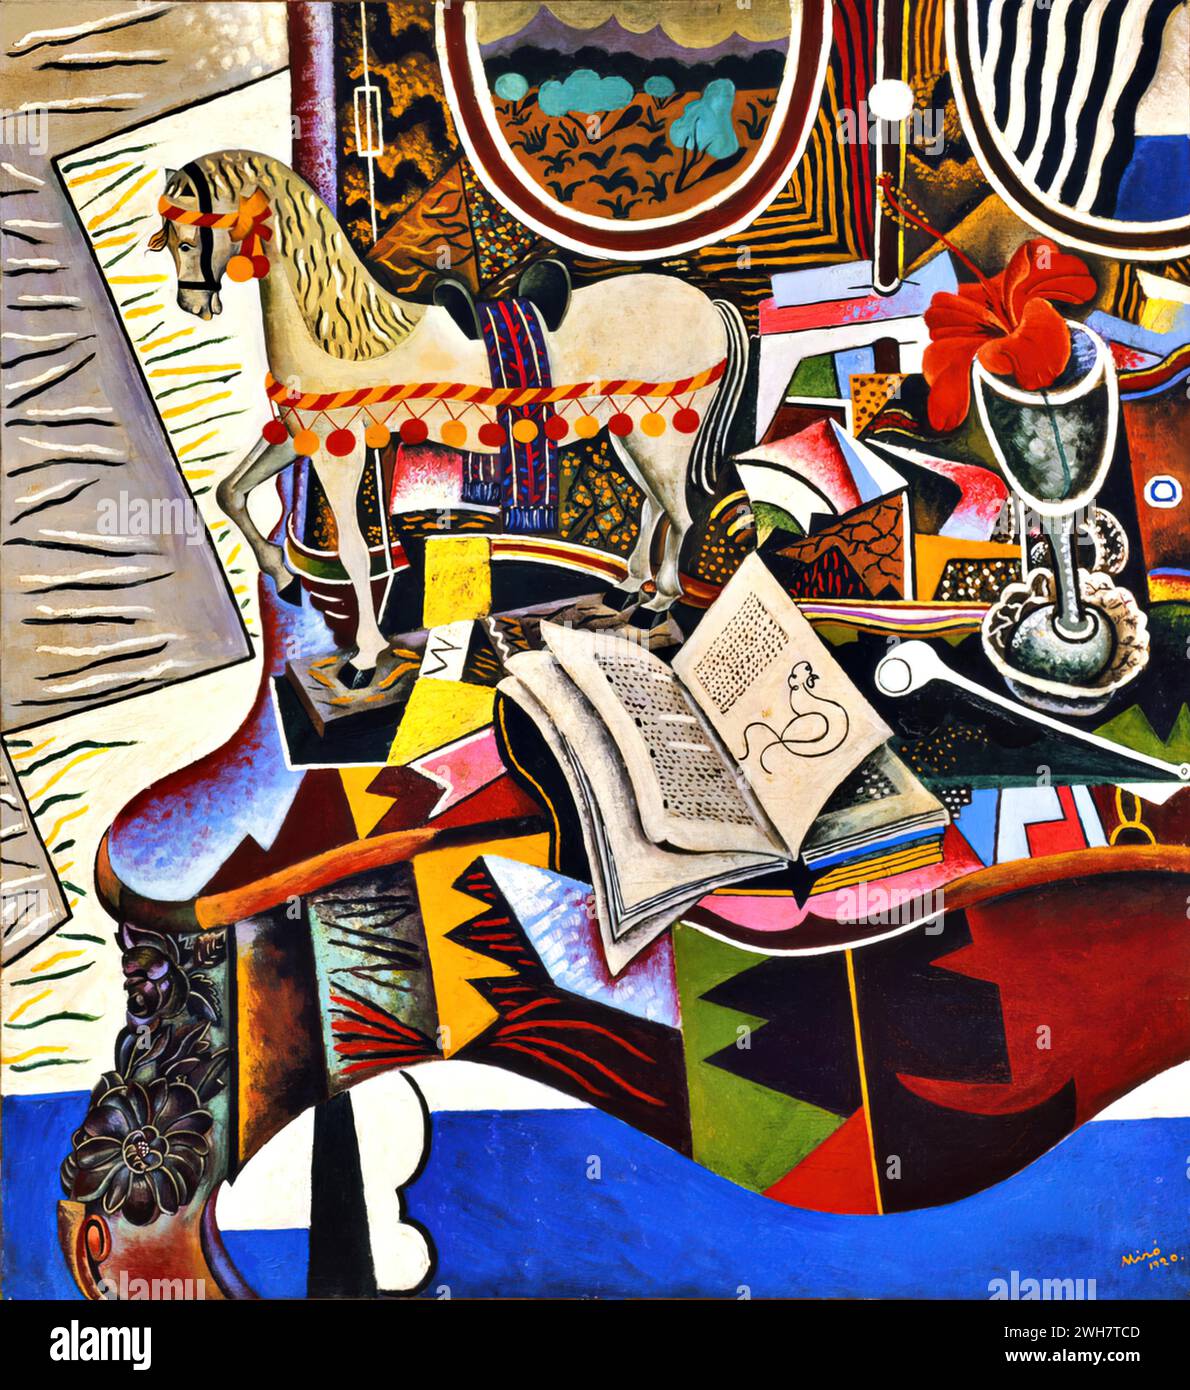 Cheval, Pipe et fleur rouge, 1920 (huile sur toile) de l'artiste Miro, Joan (1893-1983) Espagnol. Illustration de Vecteur